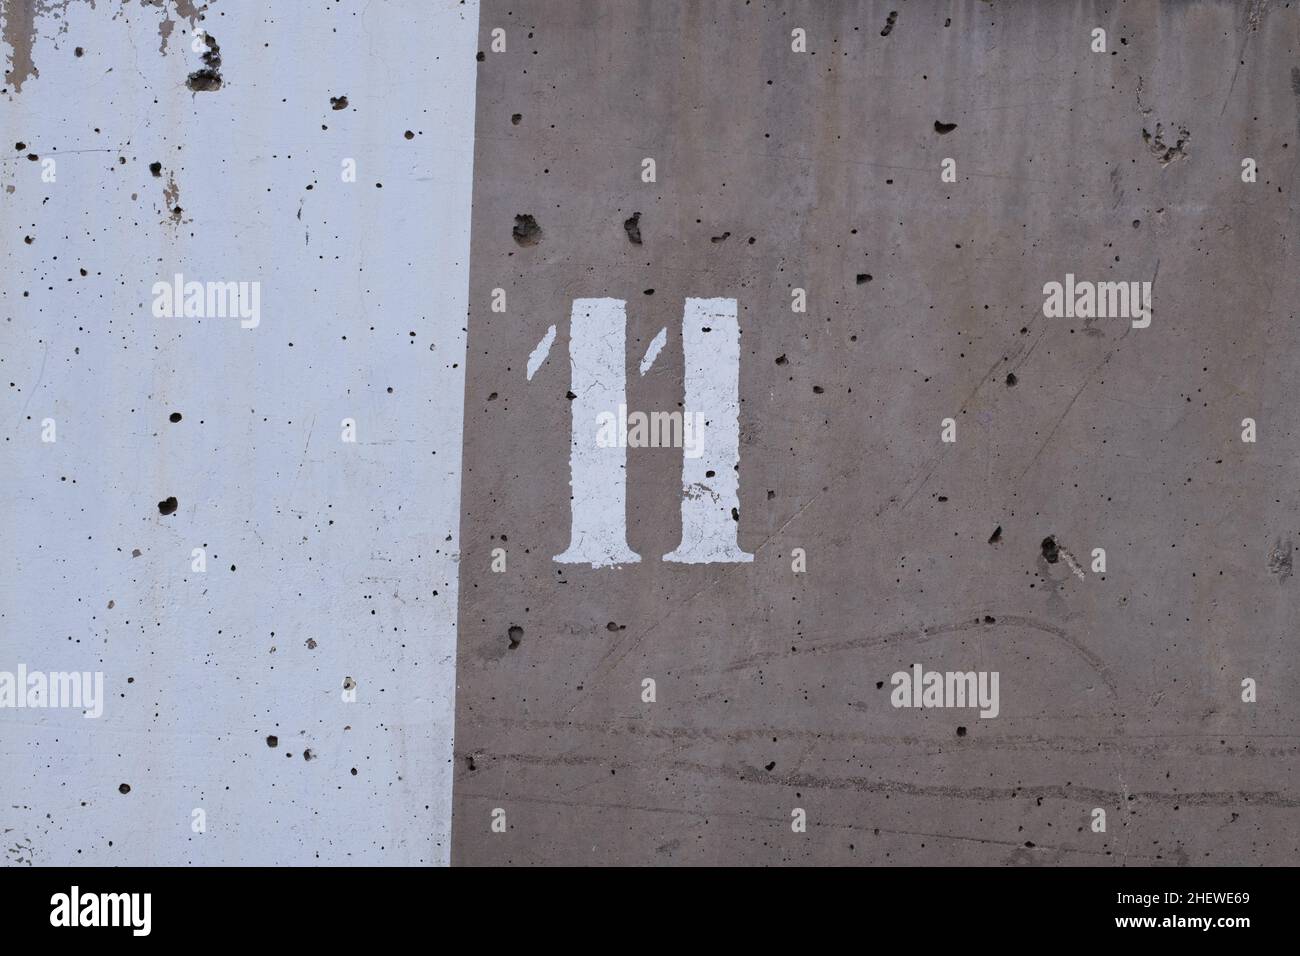 mur de ciment avec deux nuances de gris et le numéro 11 peint dessus Banque D'Images